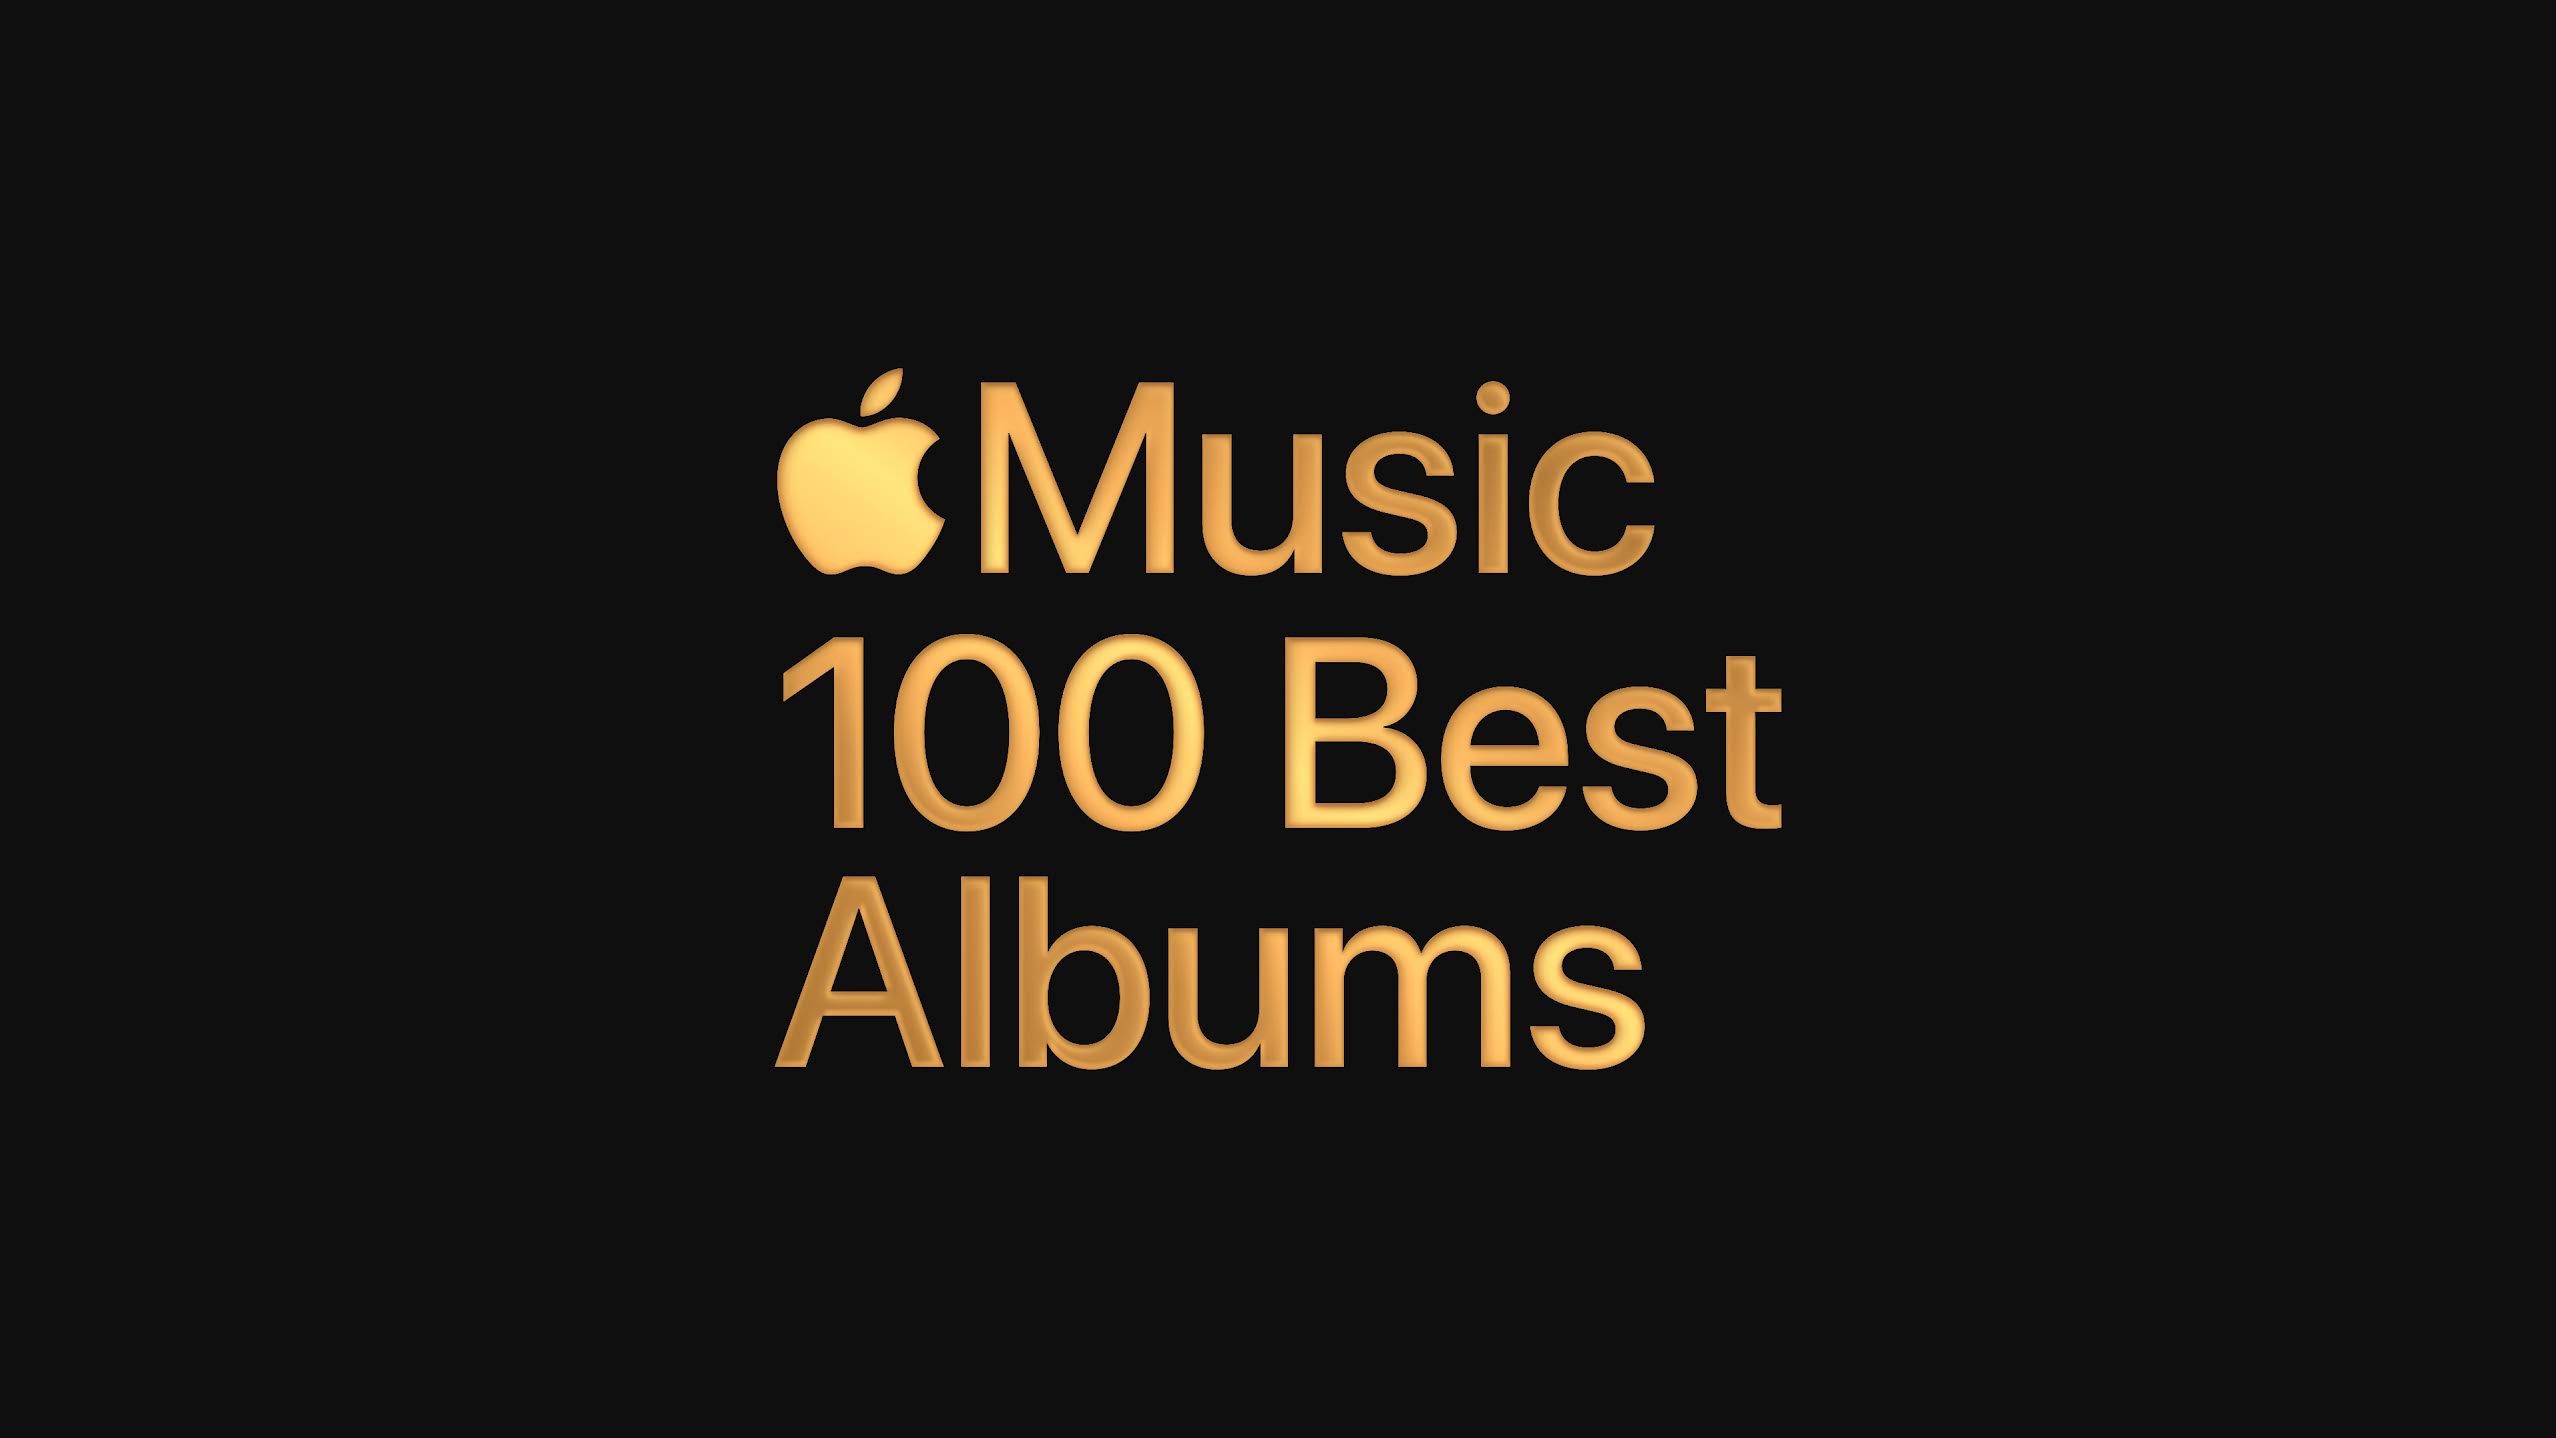 Apple Music celebra i migliori dischi di tutti i tempi con il lancio della prima parte della classifica “I 100 migliori album”